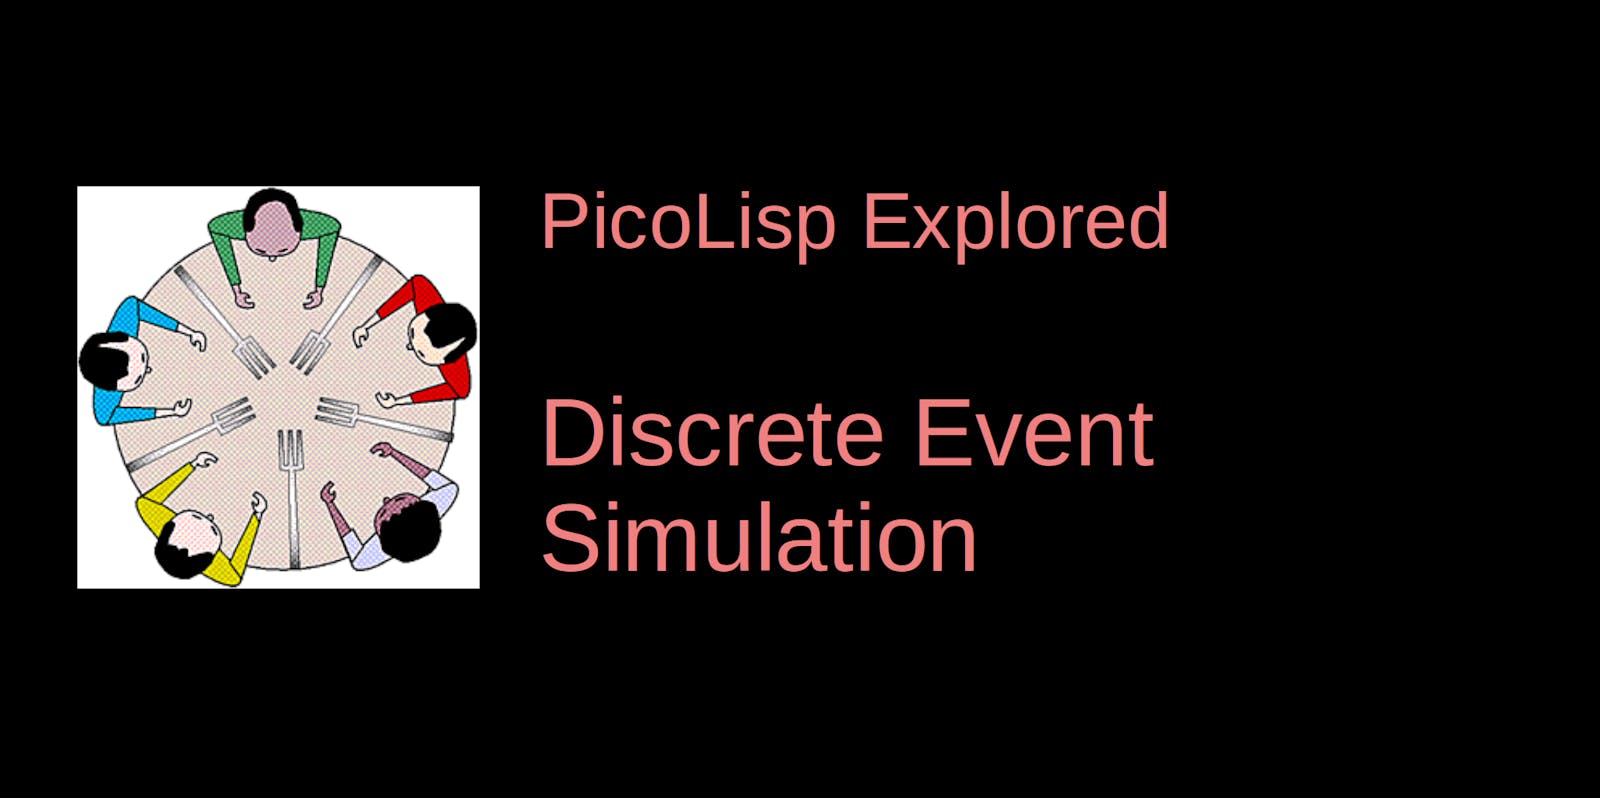 PicoLisp Explored: Discrete Event Simulation